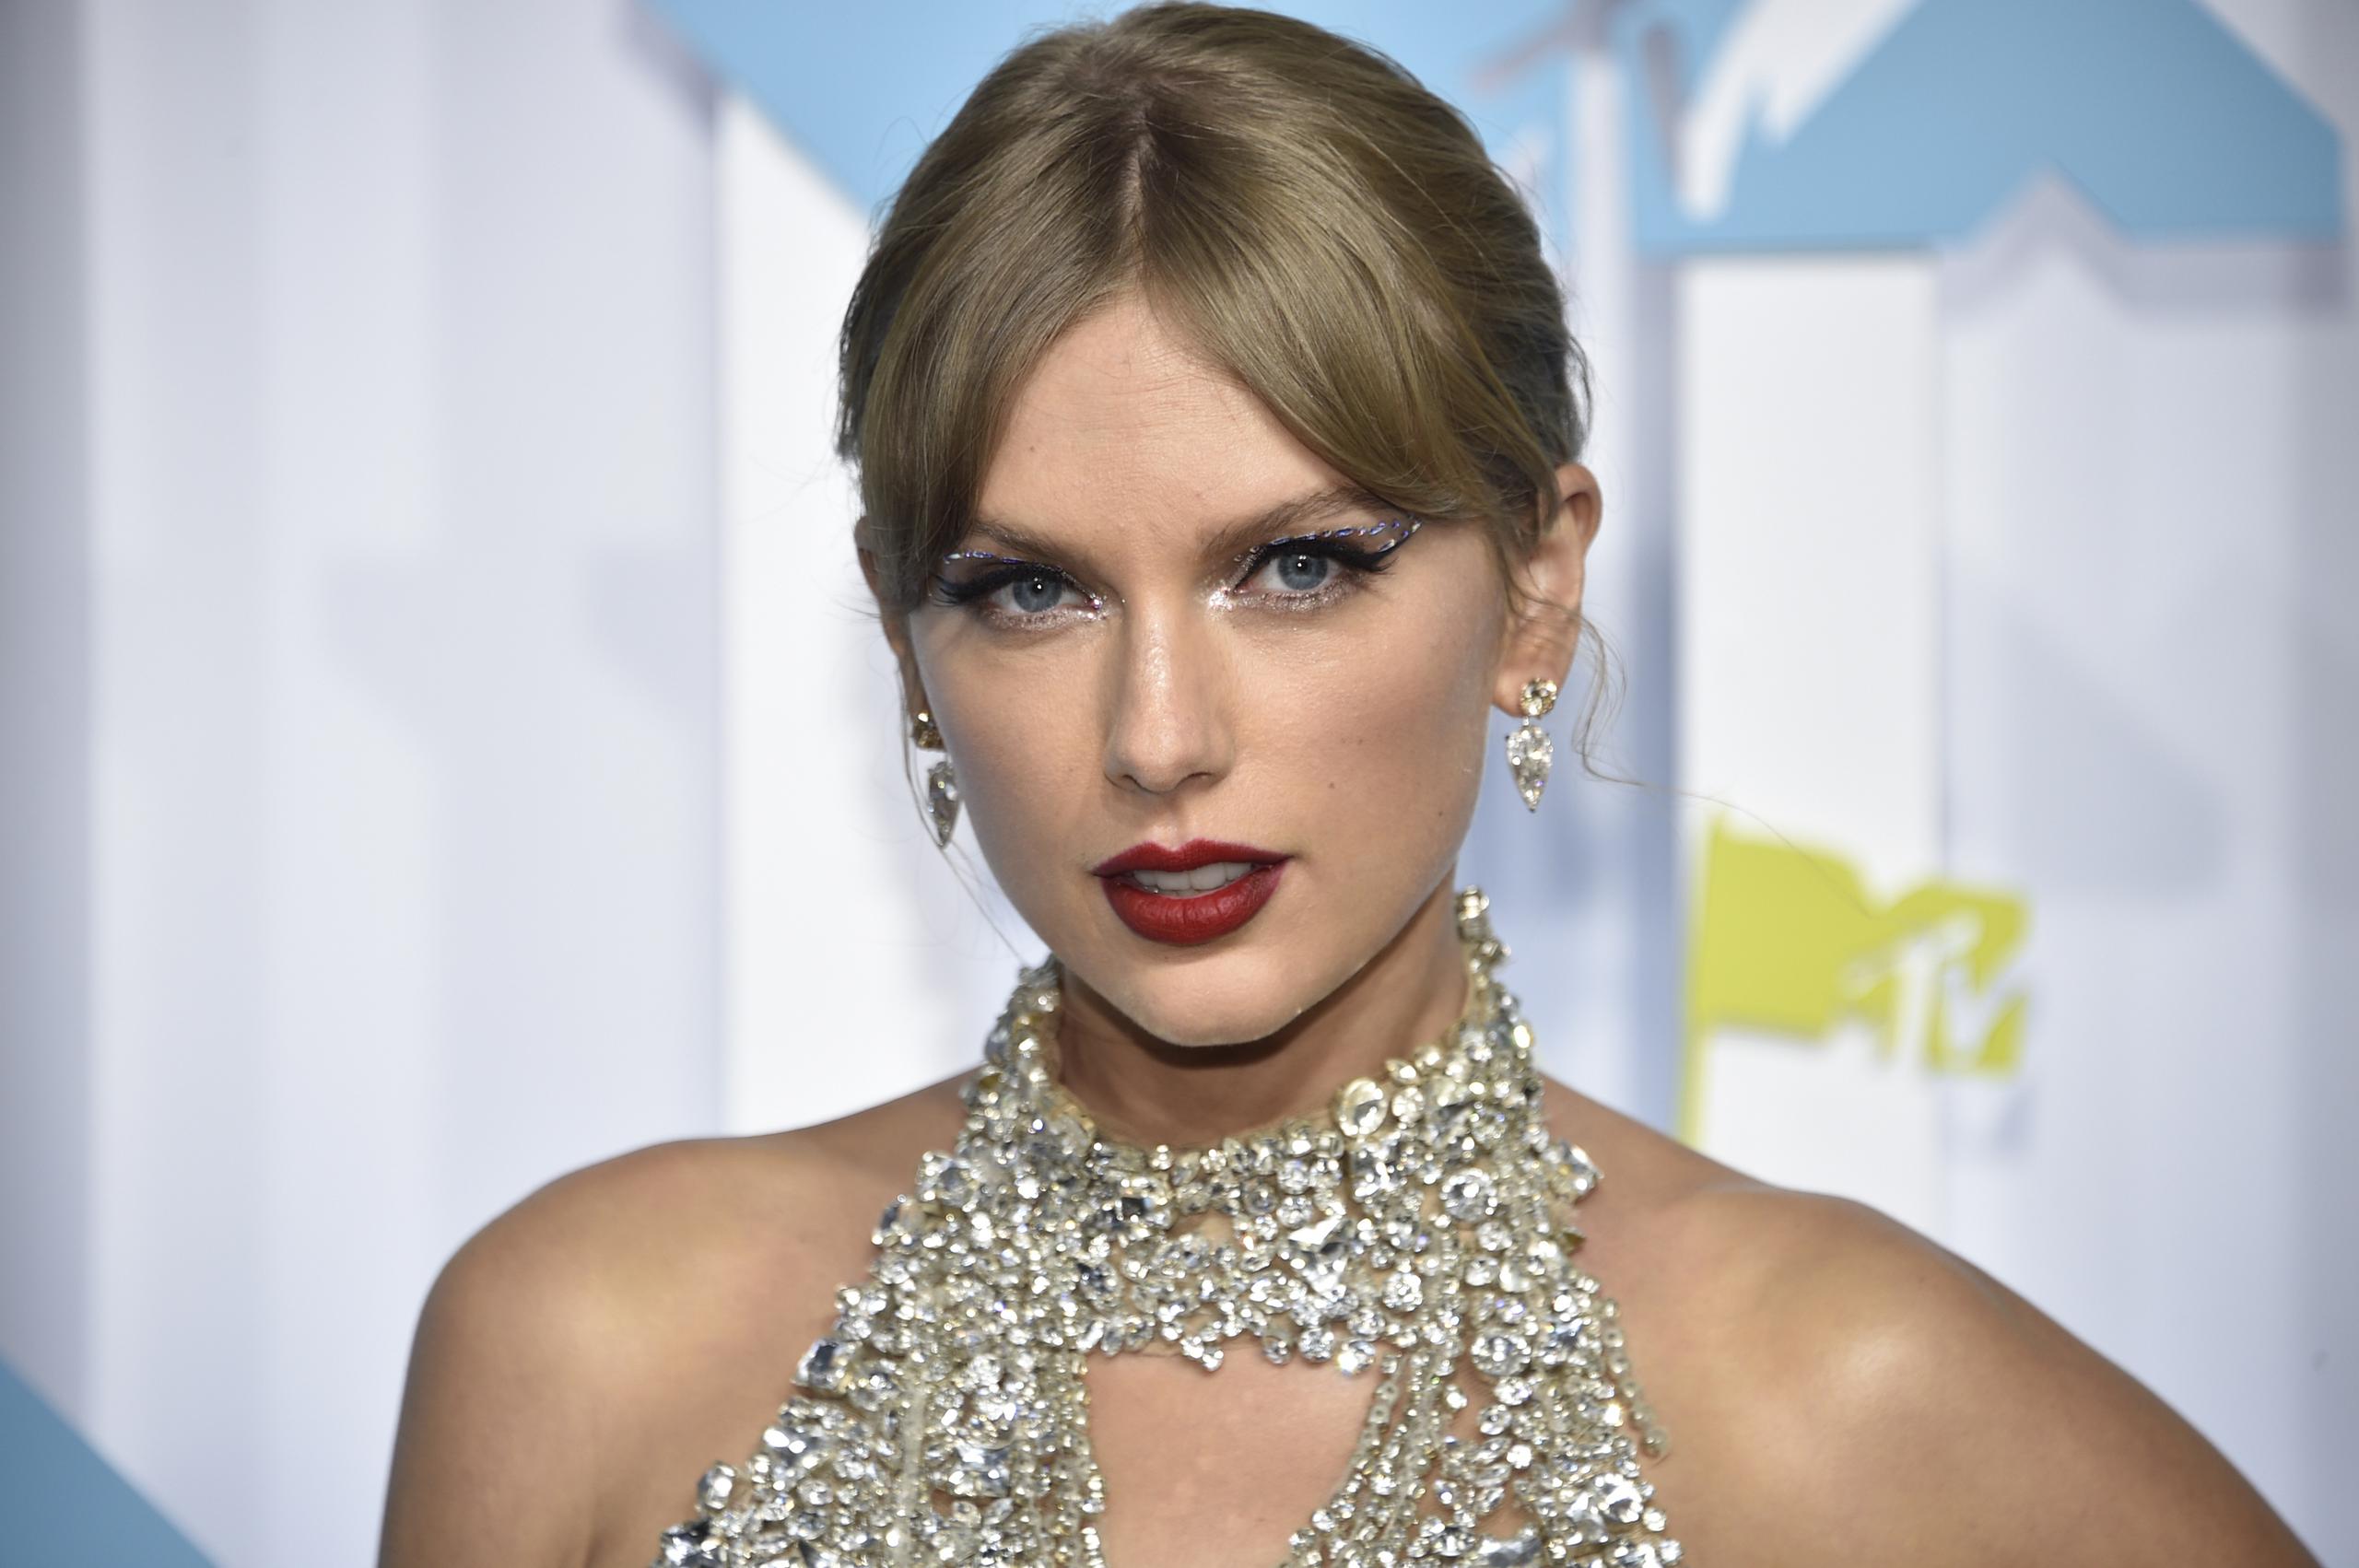 Con su último álbum “Midnights”, que salió a la venta el mes pasado, Taylor Swift se convirtió en la primera artista musical en la historia en conseguir los 10 primeros puestos de la lista de 100 canciones del Billboard Hot 100.